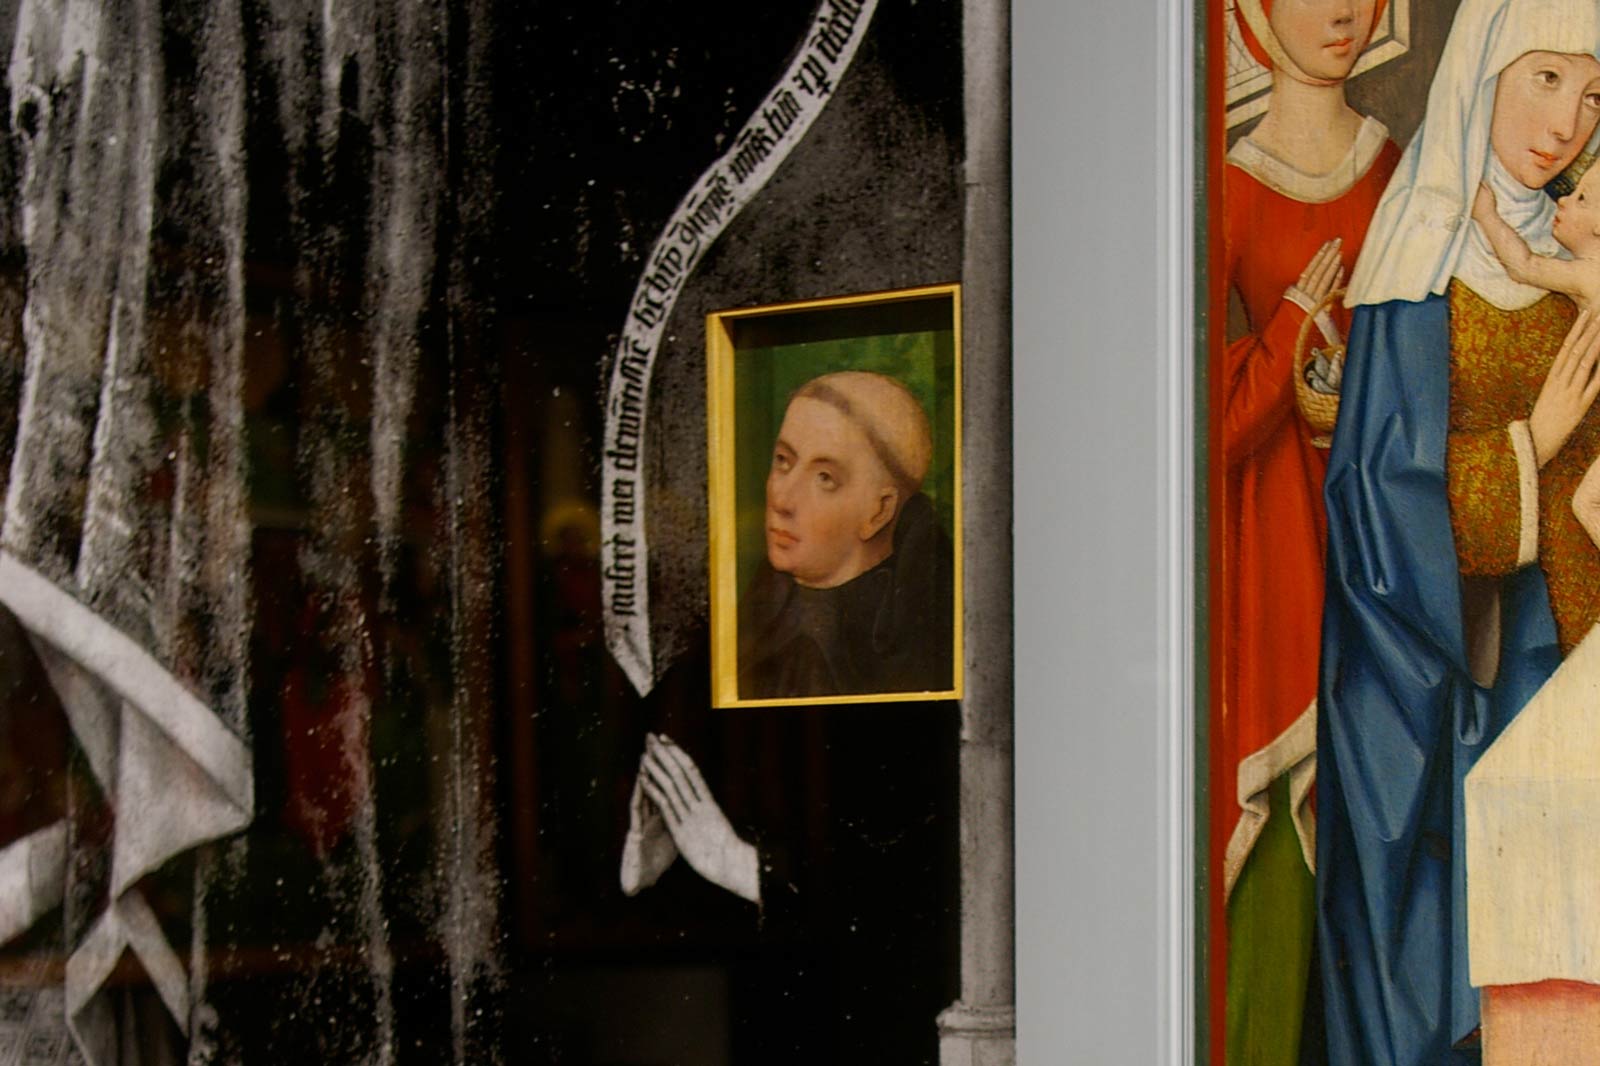 Das Referenzbild für Ausstellungsgestaltung aus der Dauerausstellung „Eingetreten – 1700 Jahre Klosterkultur“ zeigt eine Exponatpräsentation.